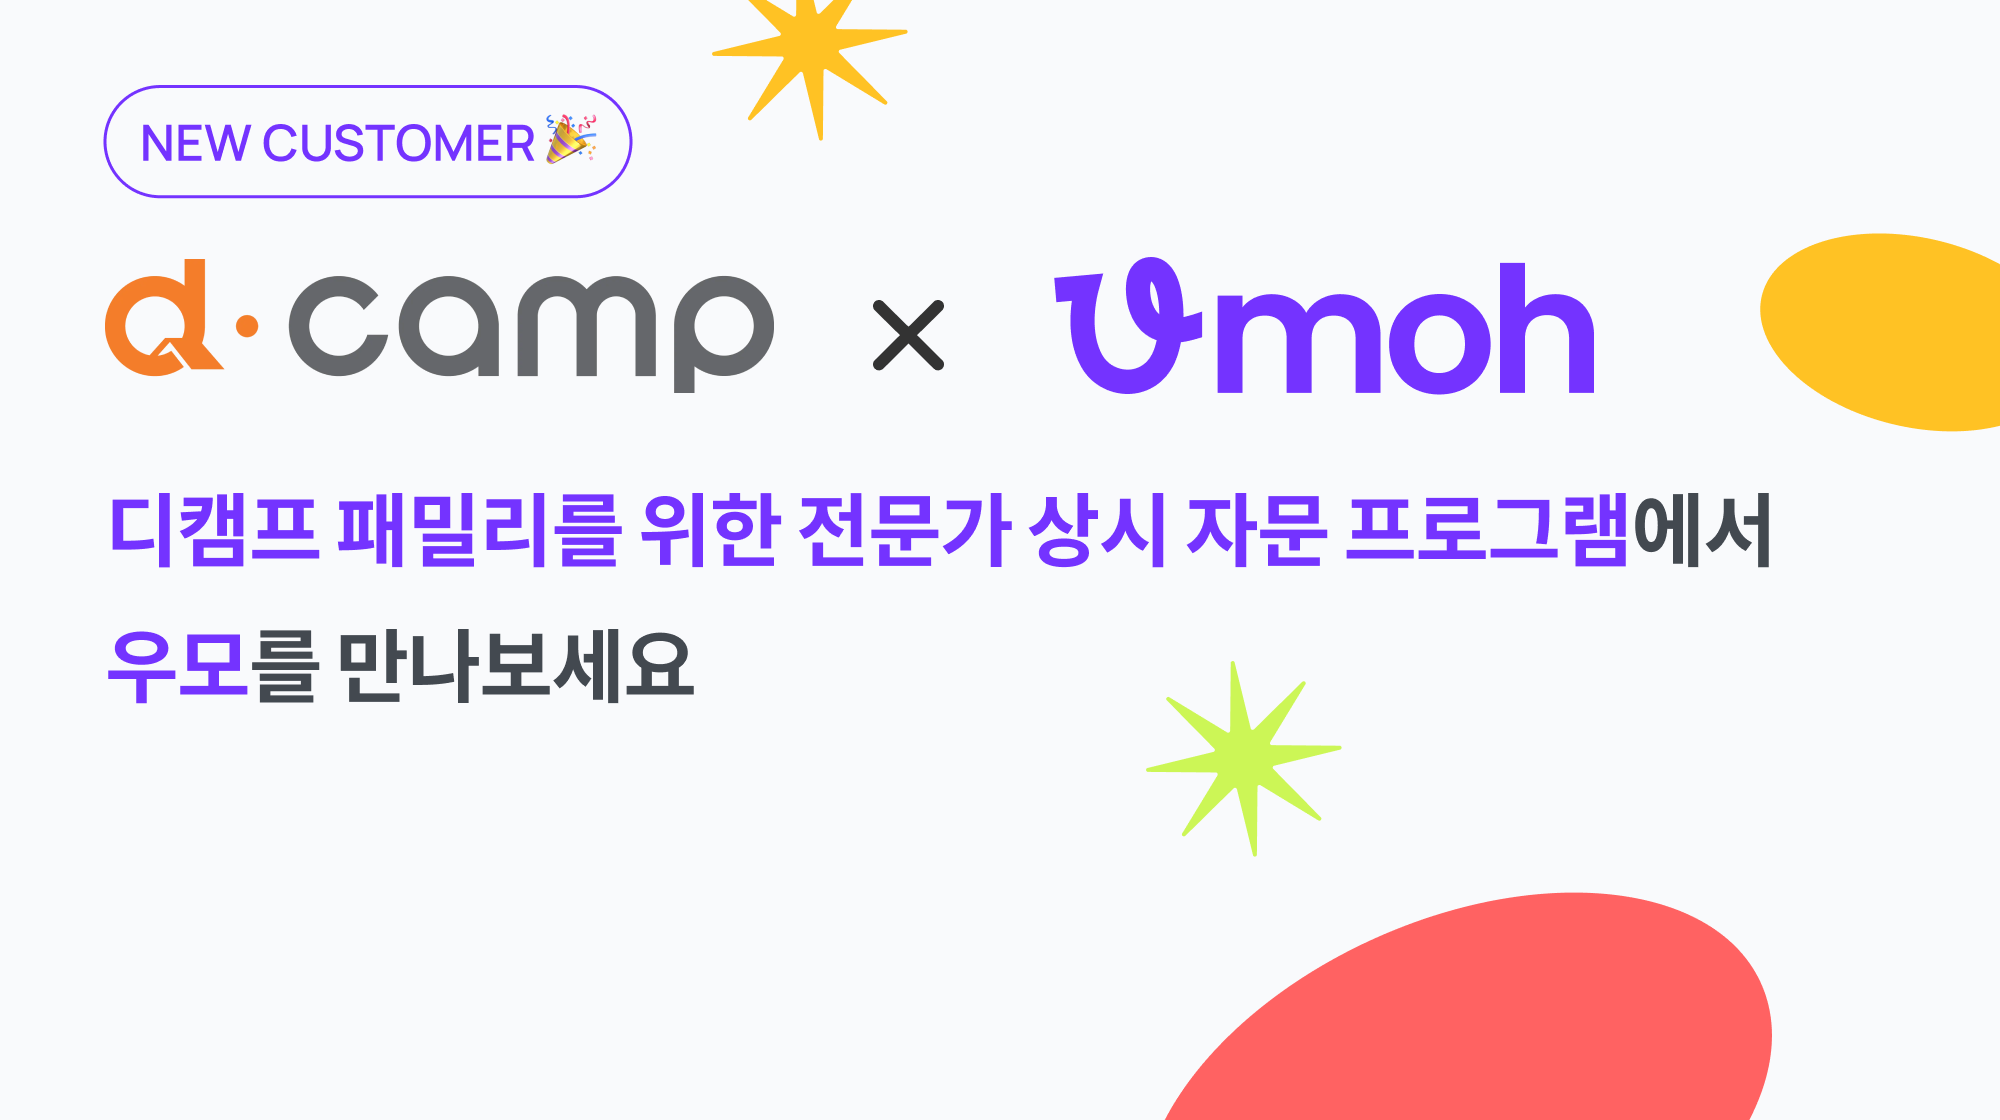 [고객사 업데이트] 디캠프(d camp) X 우모(Umoh)